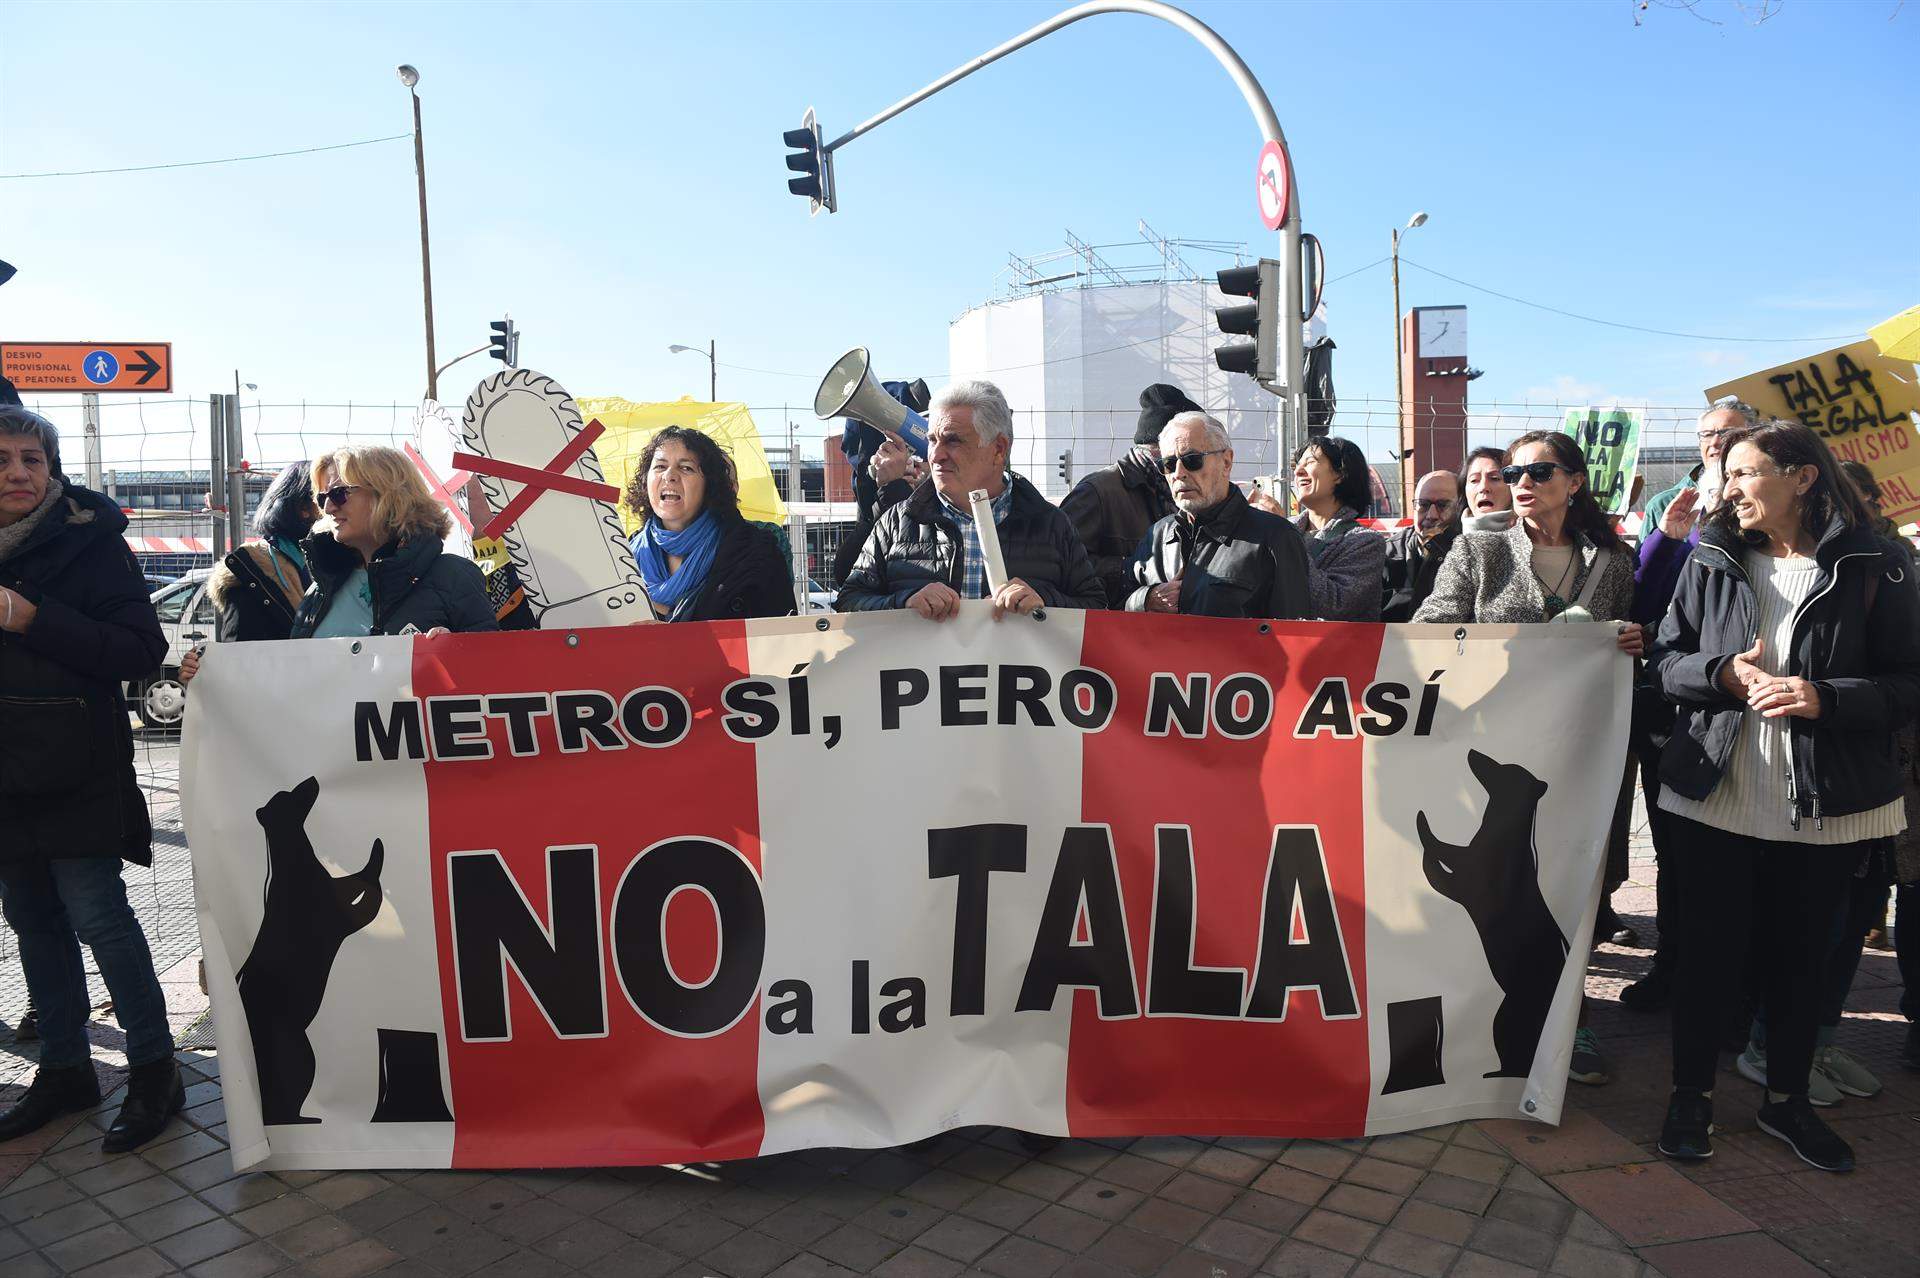 Protesta vecinal por la tala de arbolado por la ampliación de la línea 11 de Metro de Madrid / Gustavo Valiente - EP